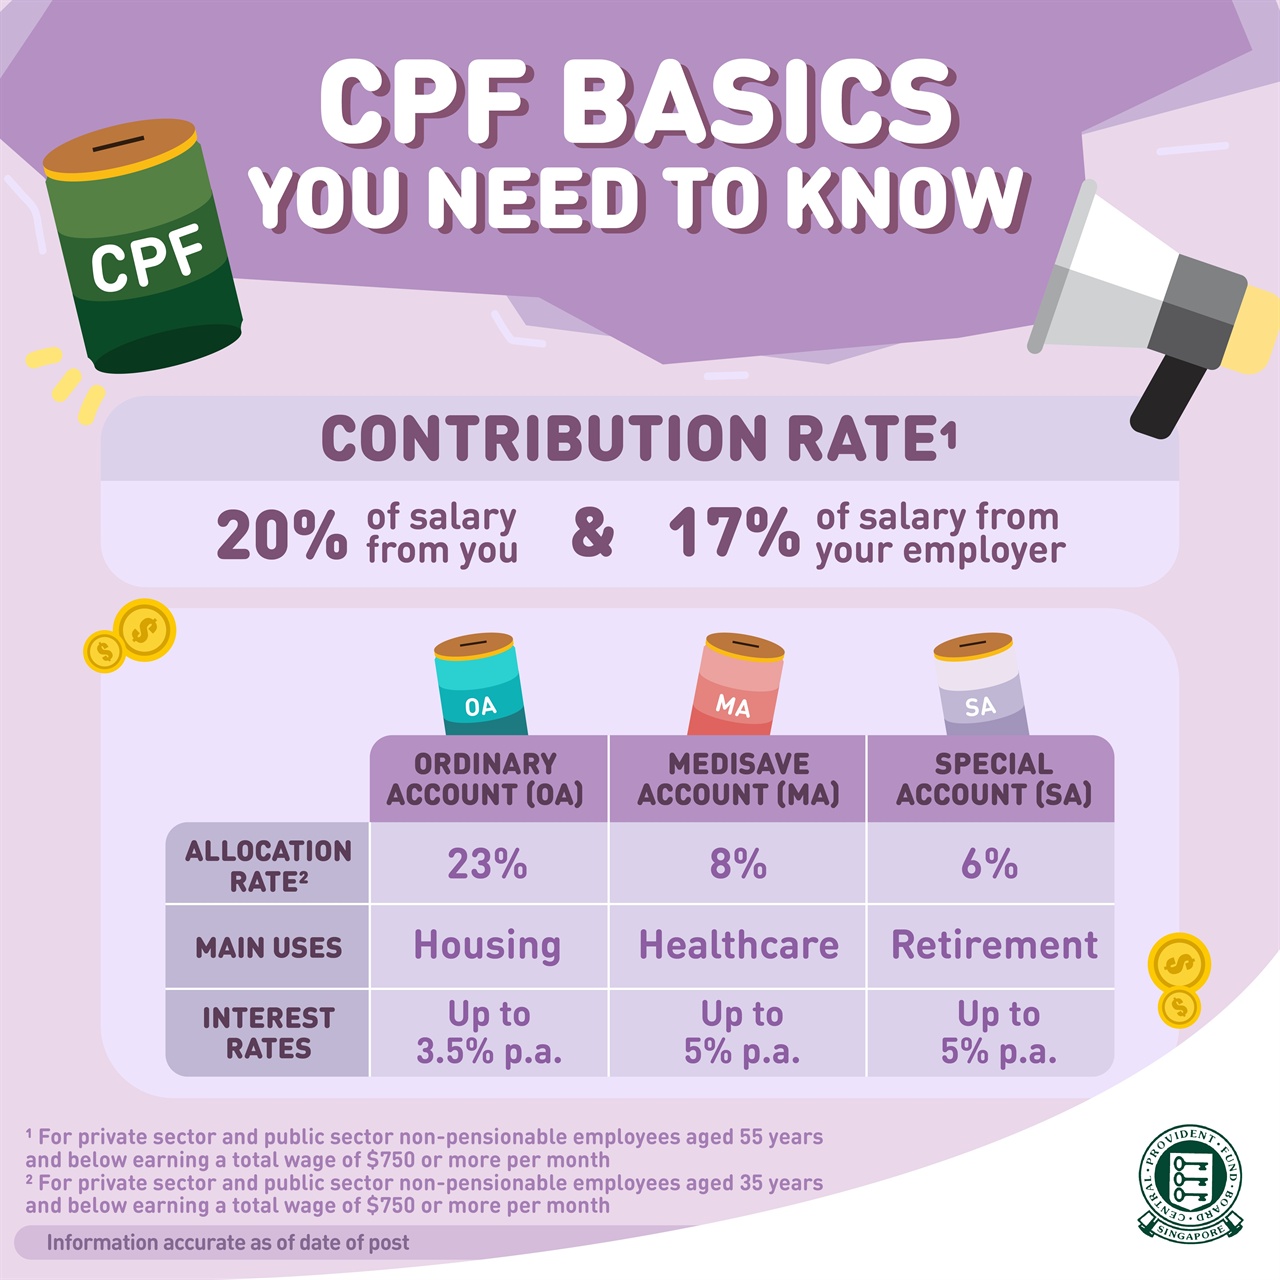 CPF 제도에 대한 요약. 적립율이 최대 37%에 이른다.